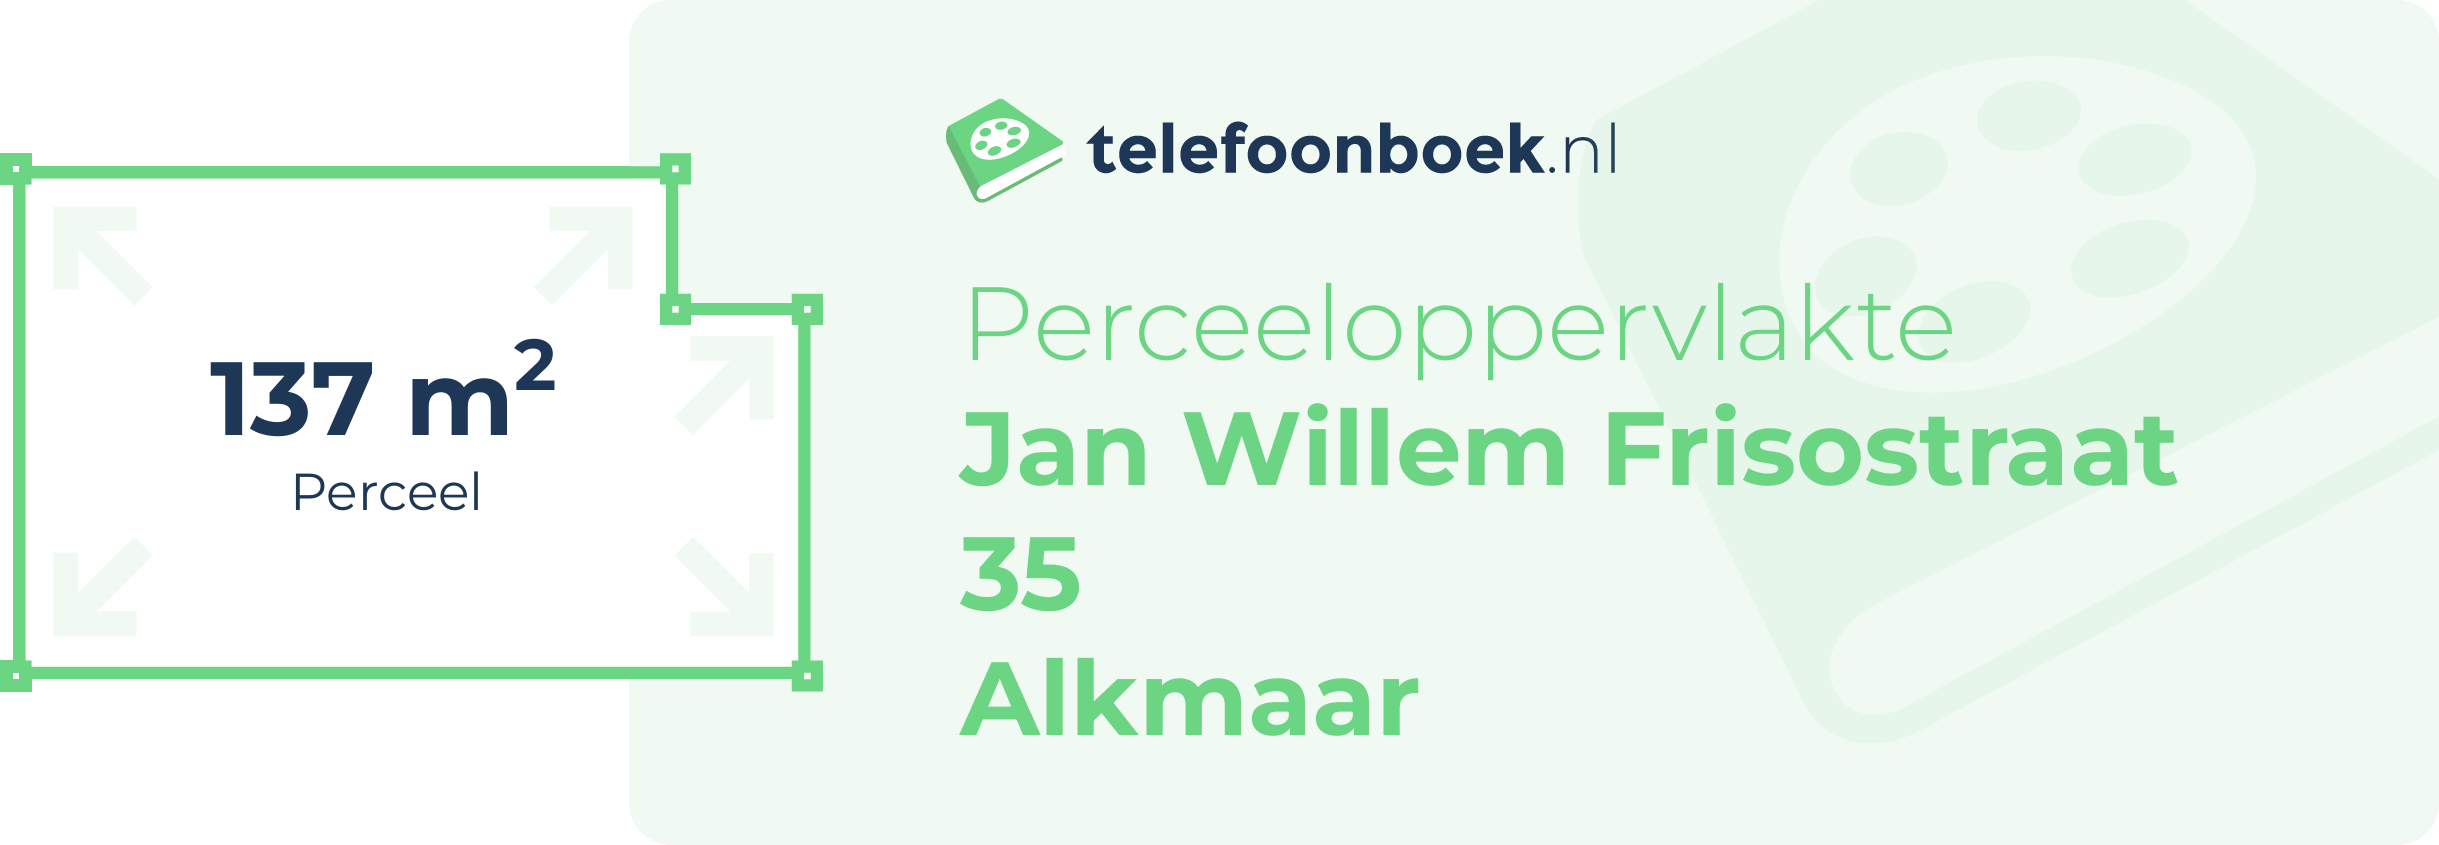 Perceeloppervlakte Jan Willem Frisostraat 35 Alkmaar